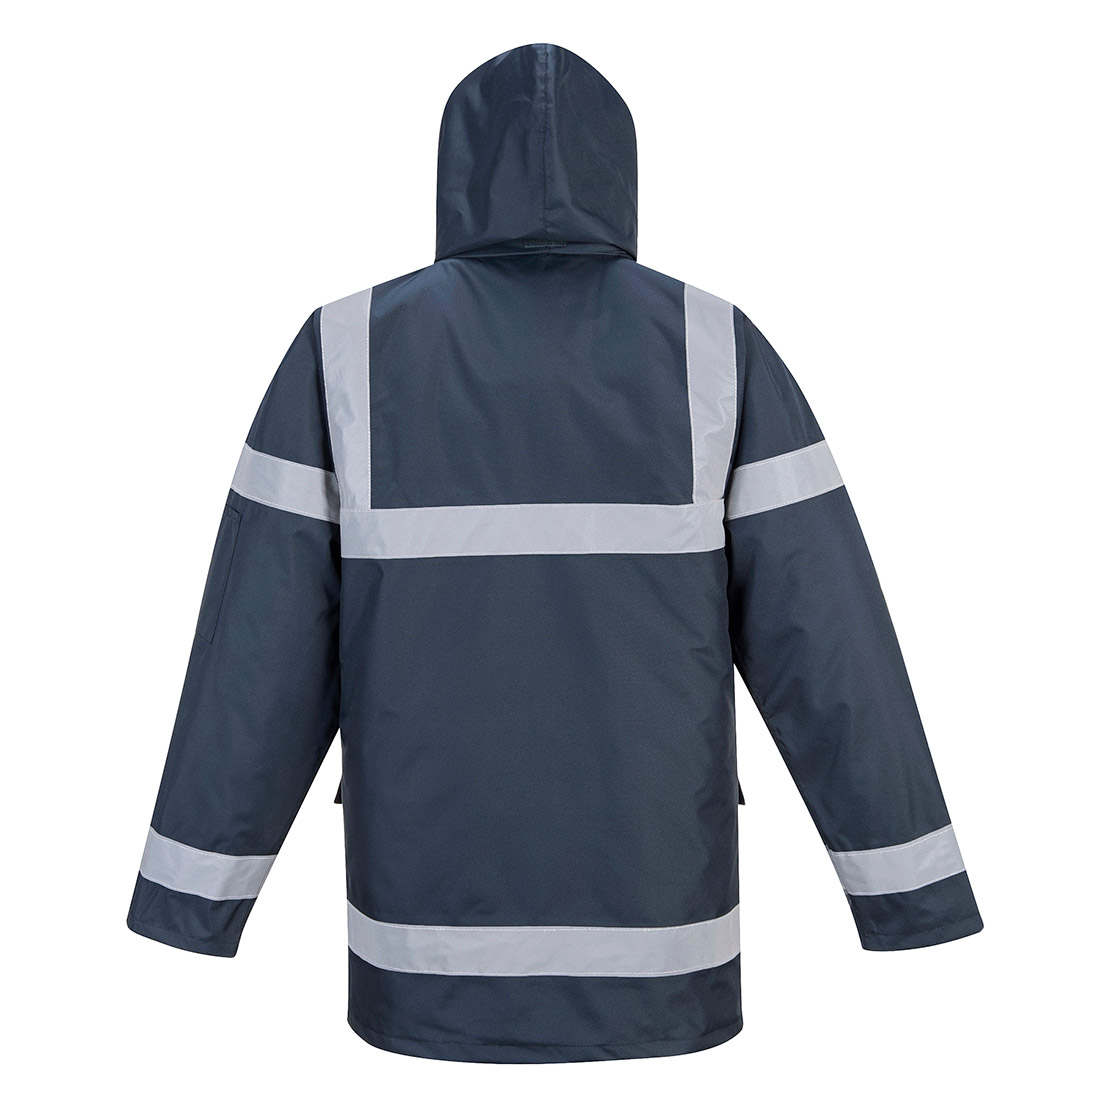 Hi-Vis Warming Windproof Waterproof Industrial Jacket with Stain Resistant